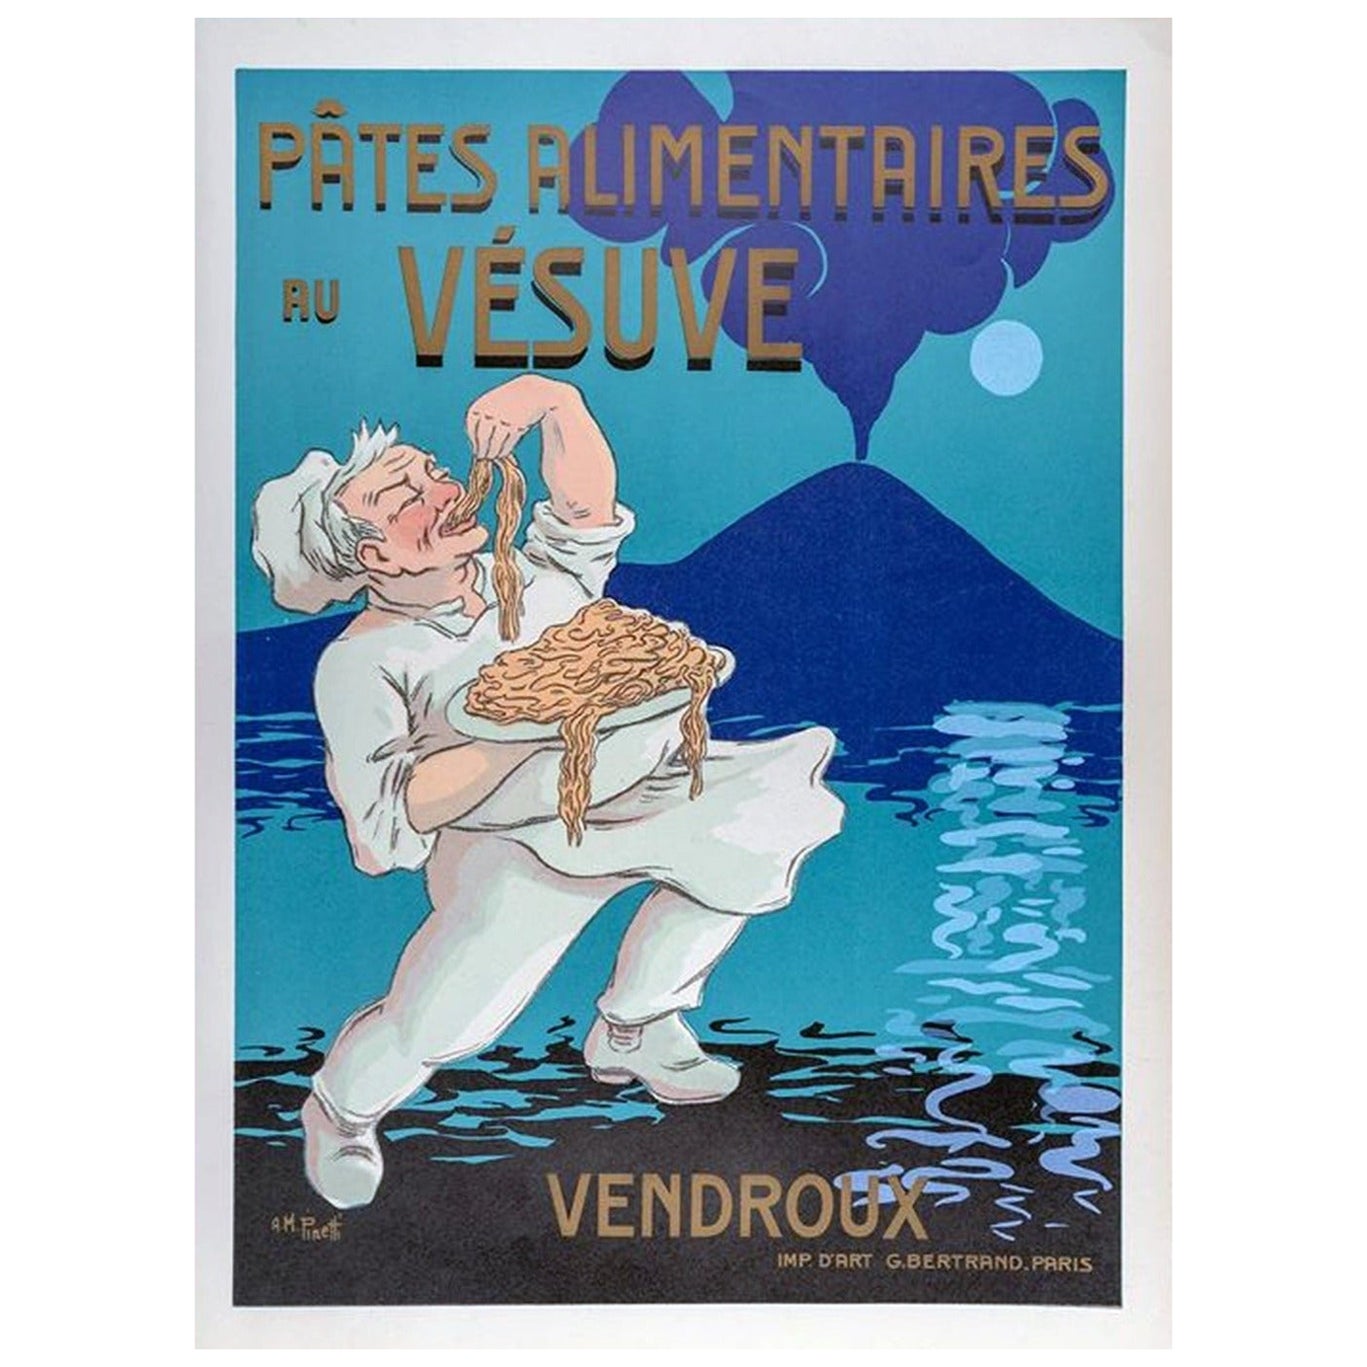 1930 Vendroux - Pasta Vesuvius Original Vintage Poster